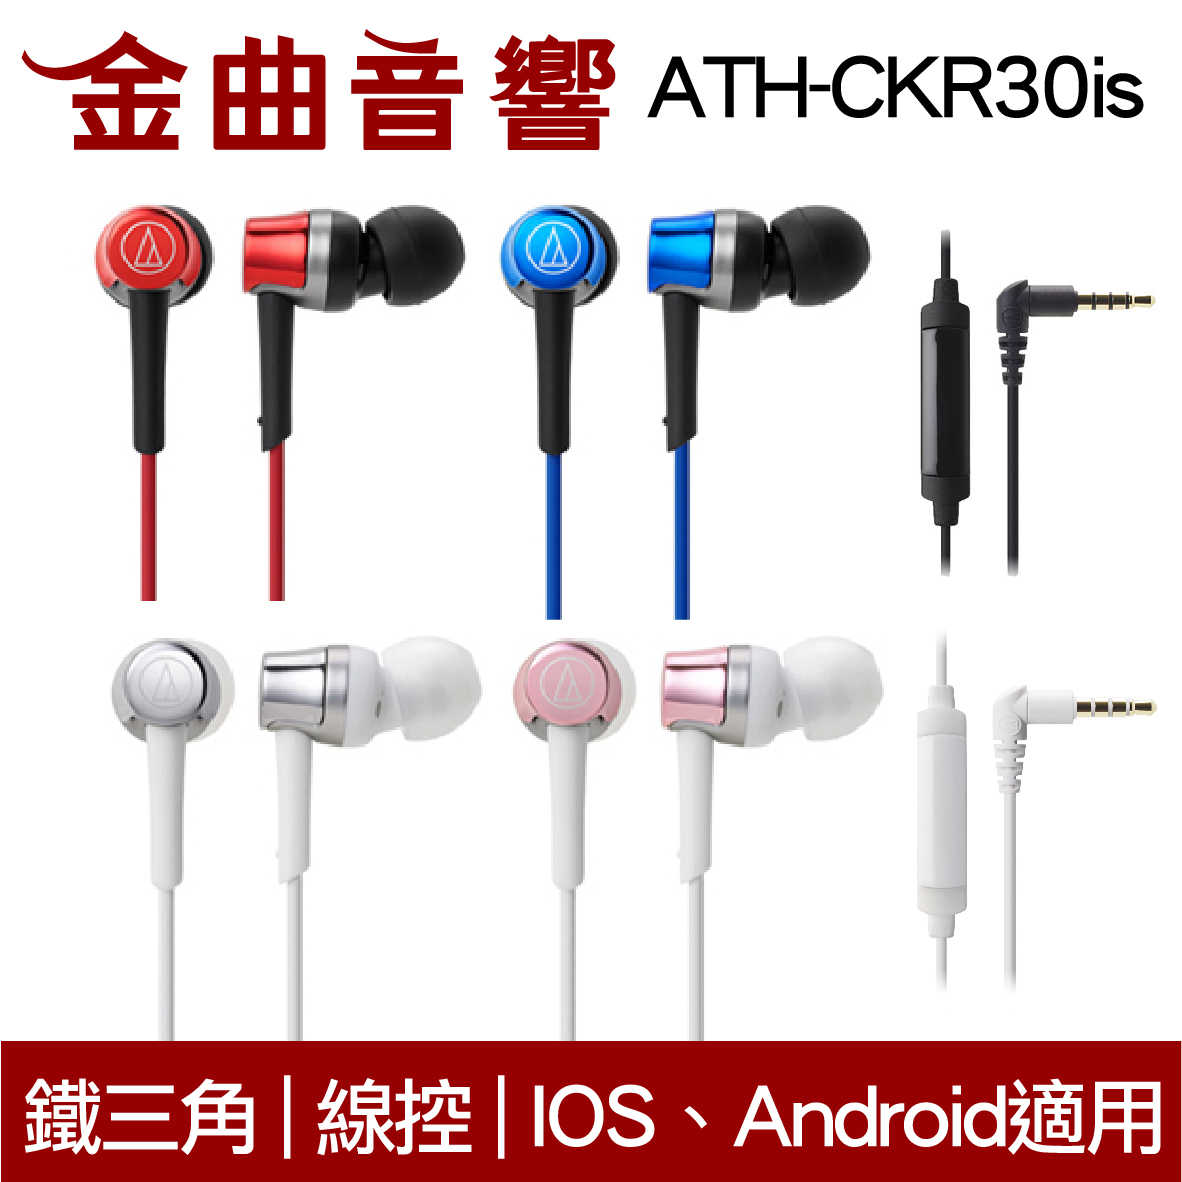 鐵三角 ATH-CKR30is  粉色 線控式耳道式耳機 iOS 安卓適用 | 金曲音響